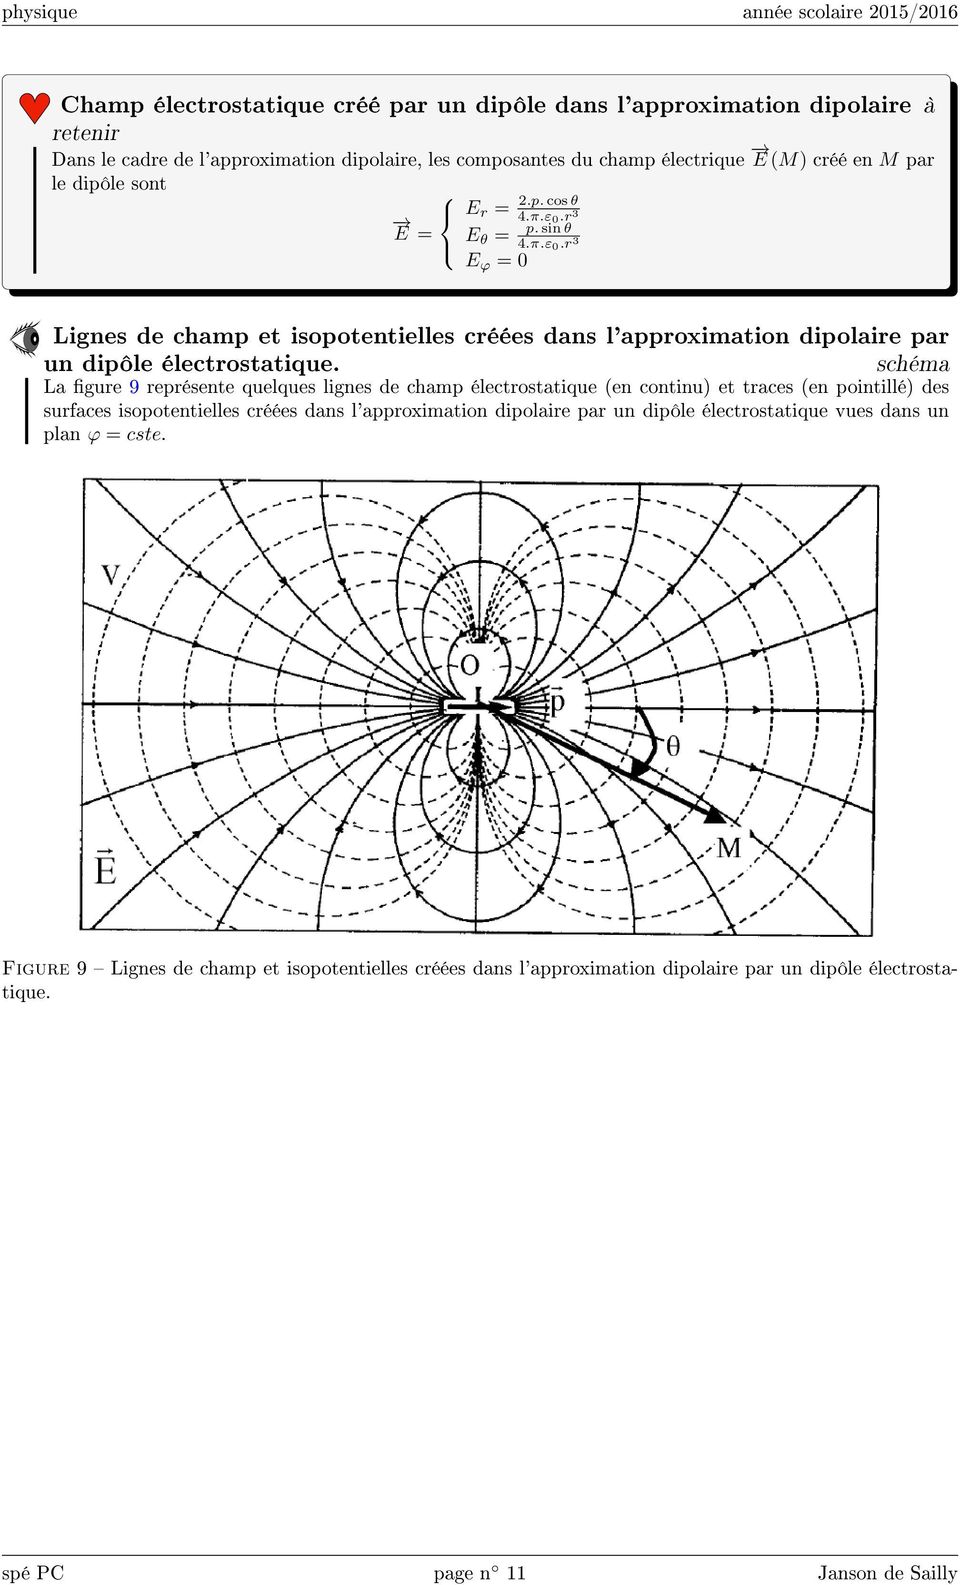 schéma La gure 9 représente quelques lignes de champ électrostatique (en continu) et traces (en pointillé) des surfaces isopotentielles créées dans l'approximation dipolaire par un